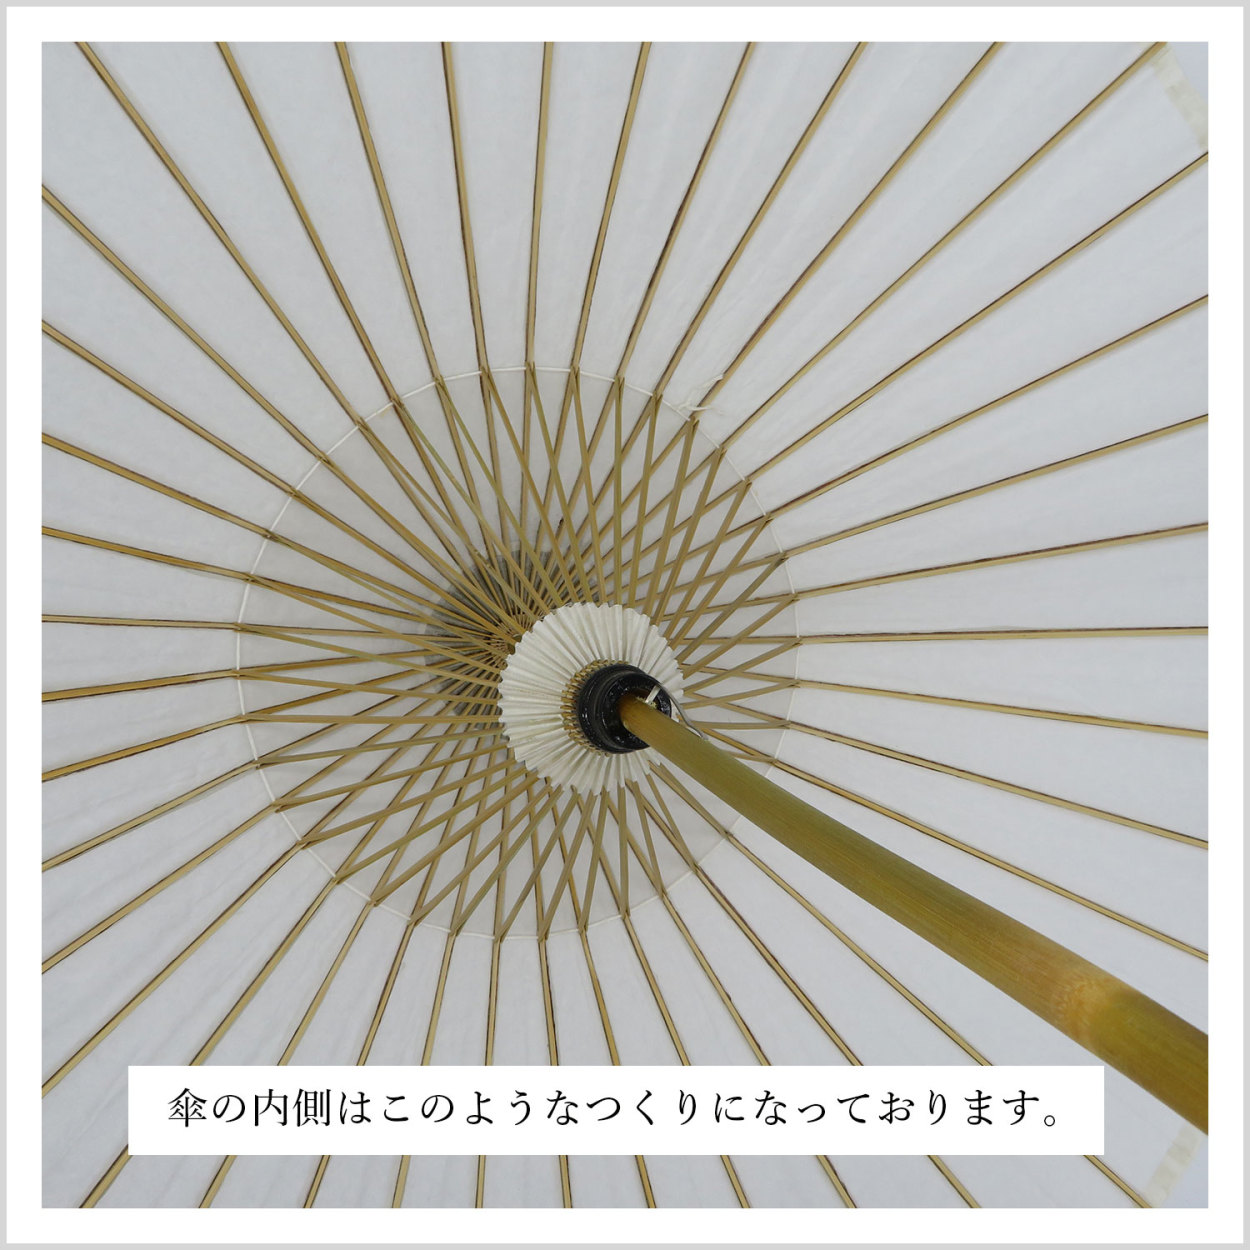 和傘 番傘 日本舞踊 踊り 着物 撮影 コスプレ 安い 「紙傘 和傘 番傘 白」 日本舞踊